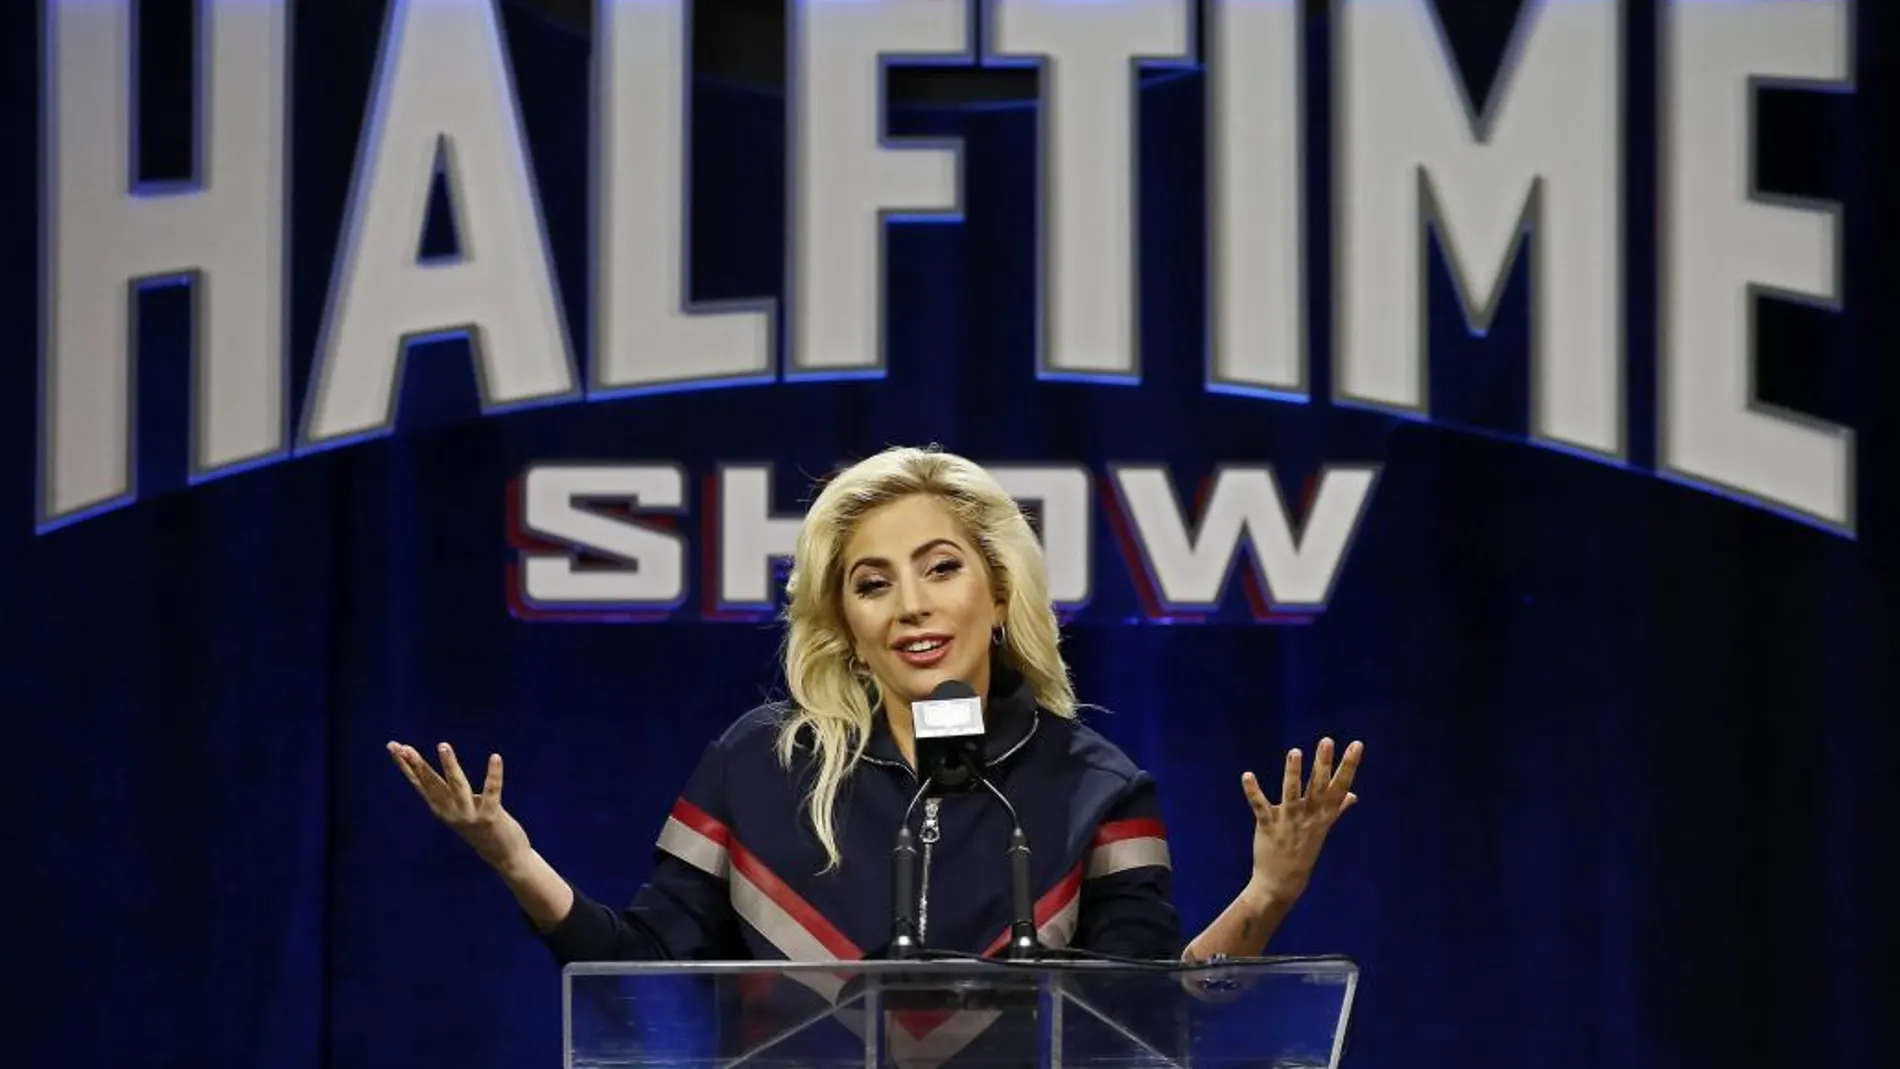 La cantante estadounidense Lady Gaga durante la rueda de prensa celebrada en el centro de Convenciones de George R. Brown en Houston, Texas, Estados Unidos hoy 2 de febrero de 2017